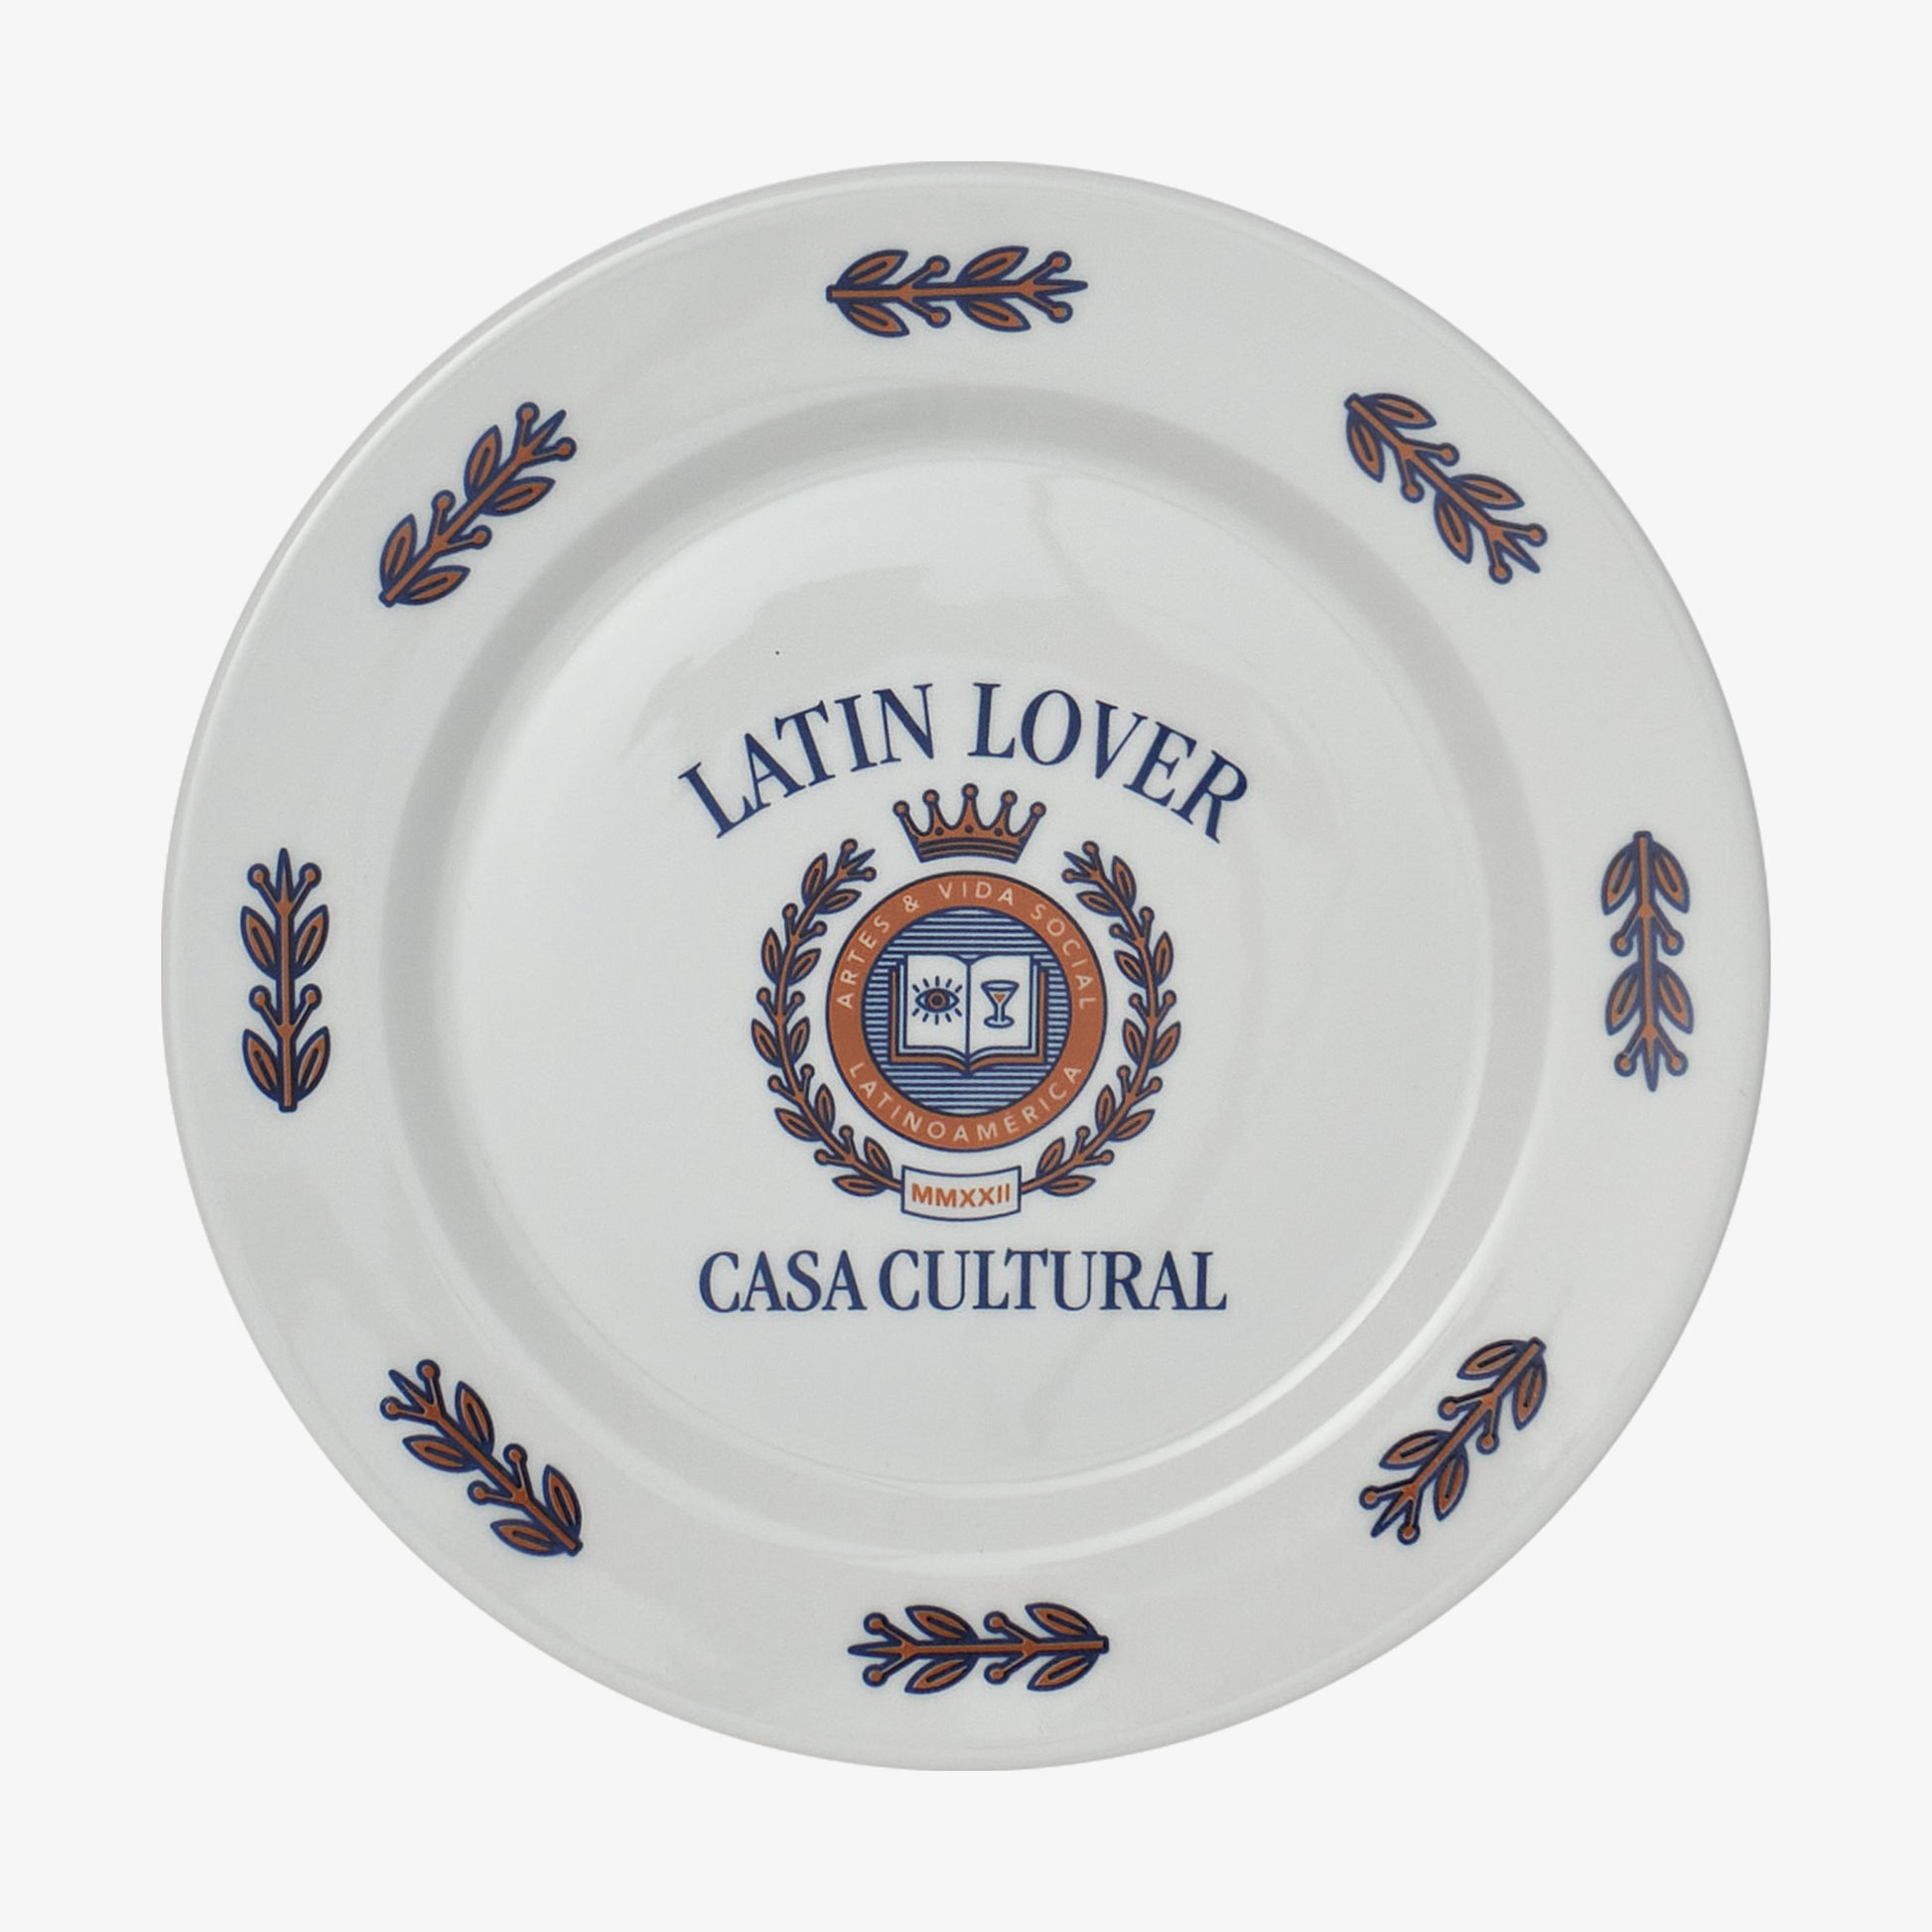 soy-latin-lover-plato-porcelana-casa-cultural-artes-y-vida-social.jpg